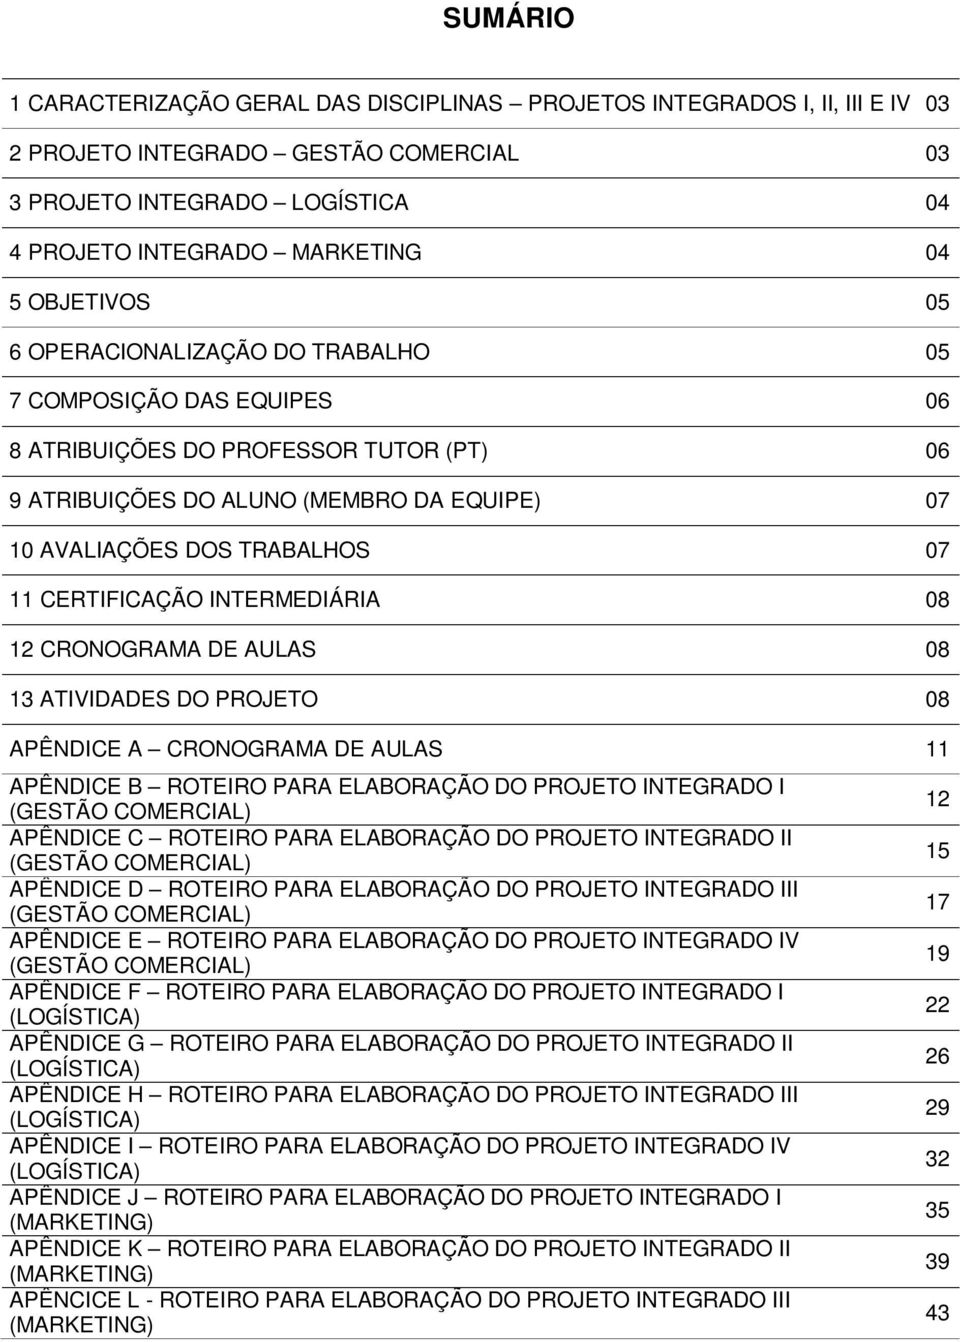 CERTIFICAÇÃO INTERMEDIÁRIA 08 12 CRONOGRAMA DE AULAS 08 13 ATIVIDADES DO PROJETO 08 APÊNDICE A CRONOGRAMA DE AULAS 11 APÊNDICE B ROTEIRO PARA ELABORAÇÃO DO PROJETO INTEGRADO I (GESTÃO COMERCIAL)